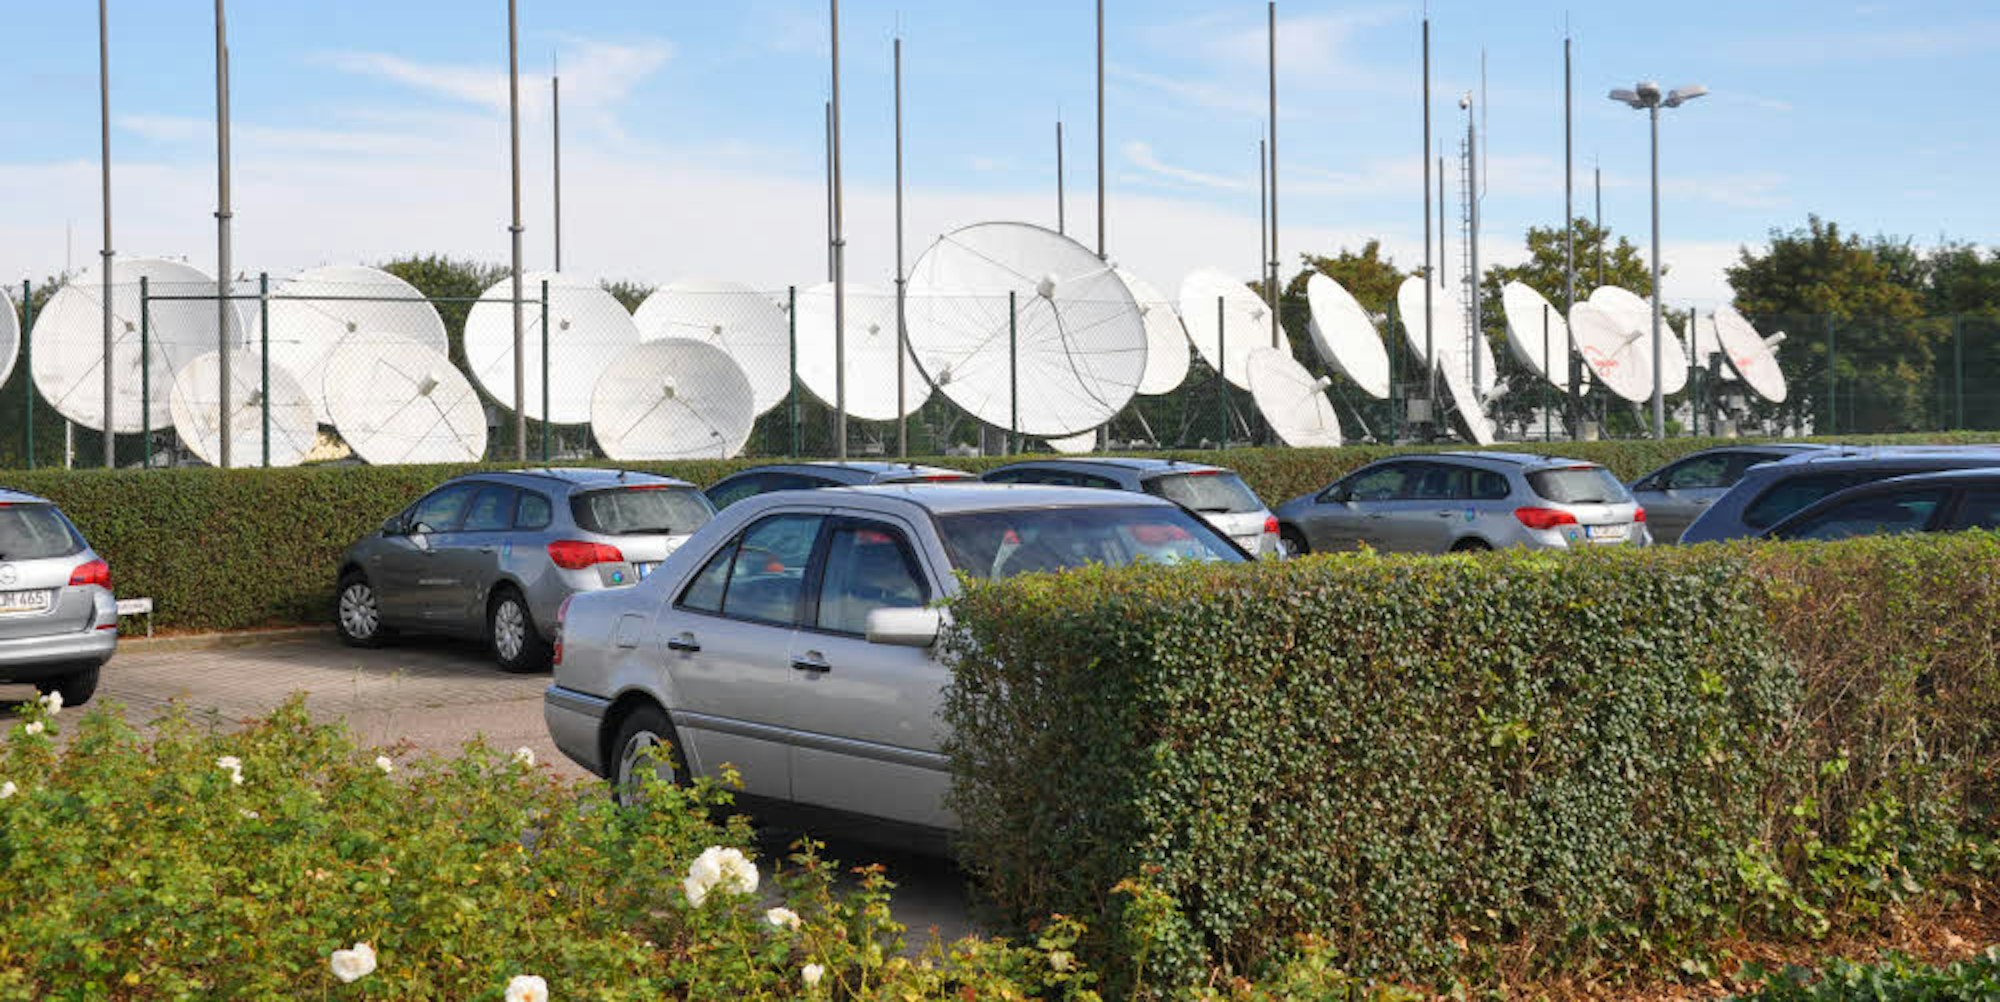 Bei Unitymedia können die großen Satellitenempfänger besichtigt werden.